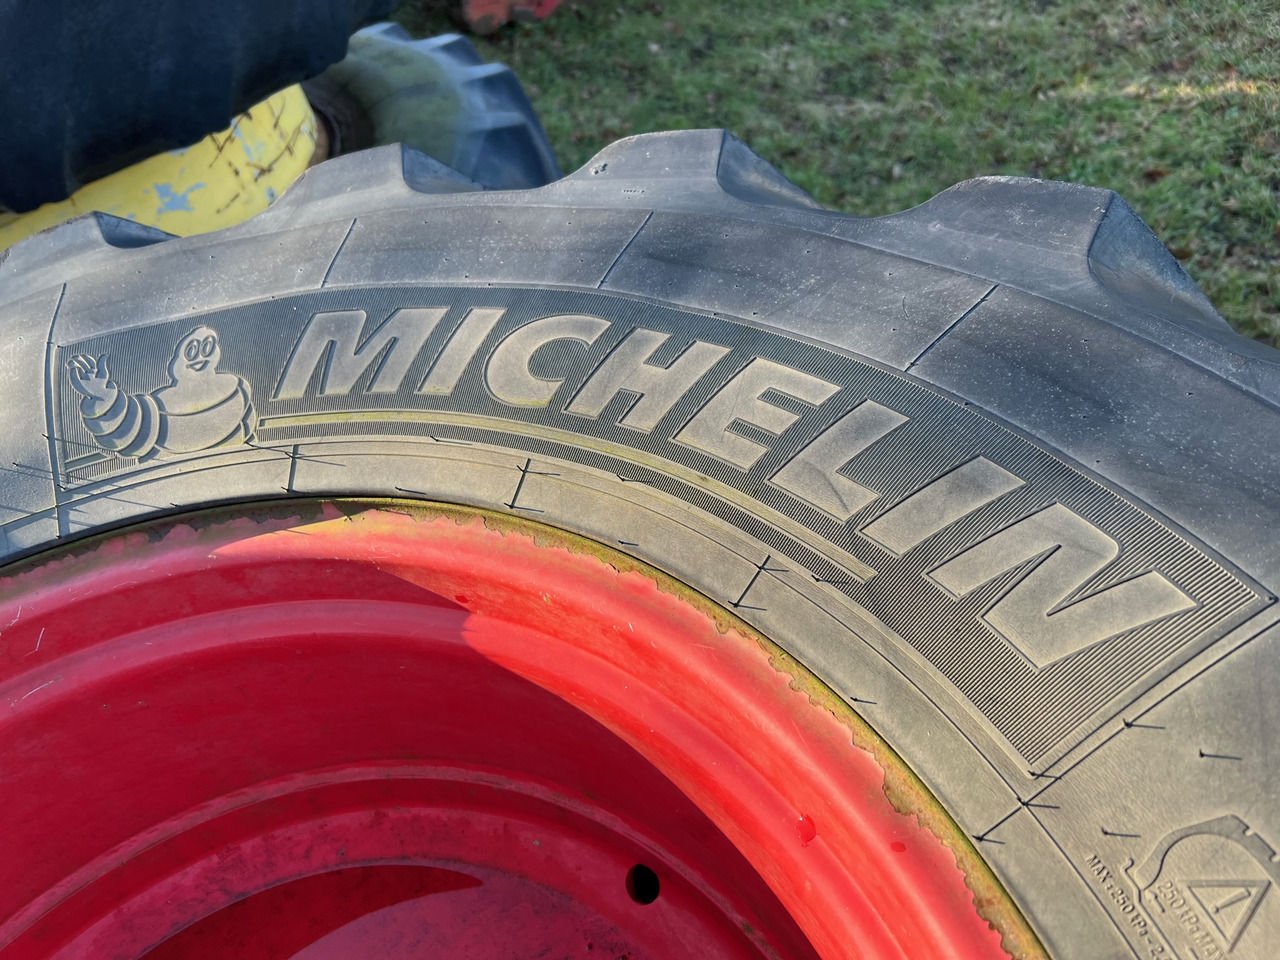 Banden en velgen Michelin 1x Rad 600/65 R28: afbeelding 4